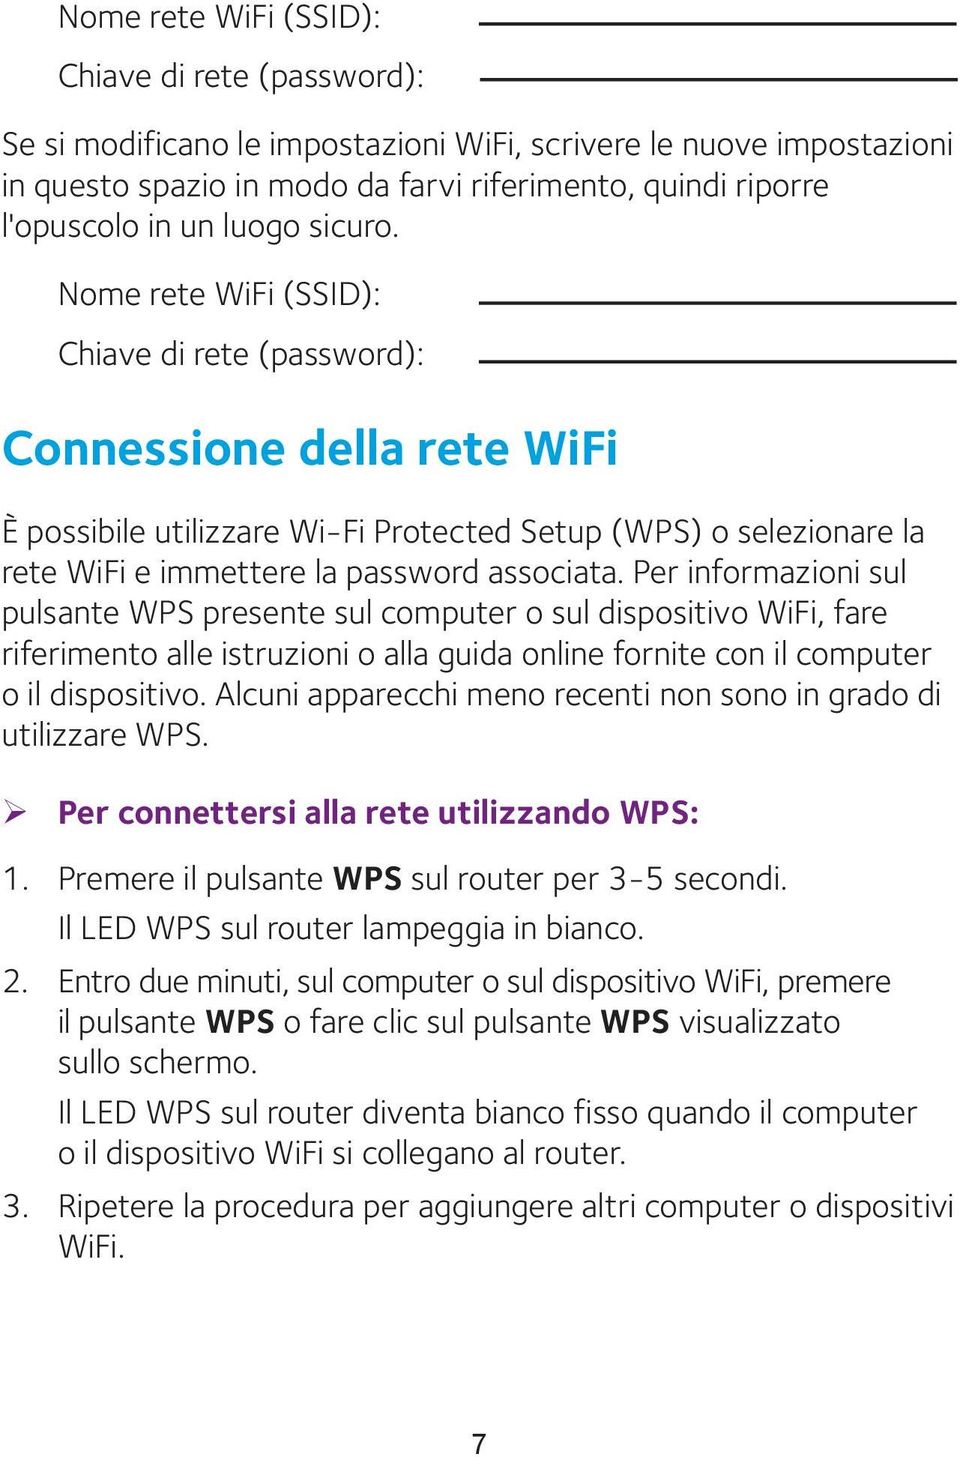 Nome rete WiFi (SSID): Chiave di rete (password): Connessione della rete WiFi È possibile utilizzare Wi-Fi Protected Setup (WPS) o selezionare la rete WiFi e immettere la password associata.